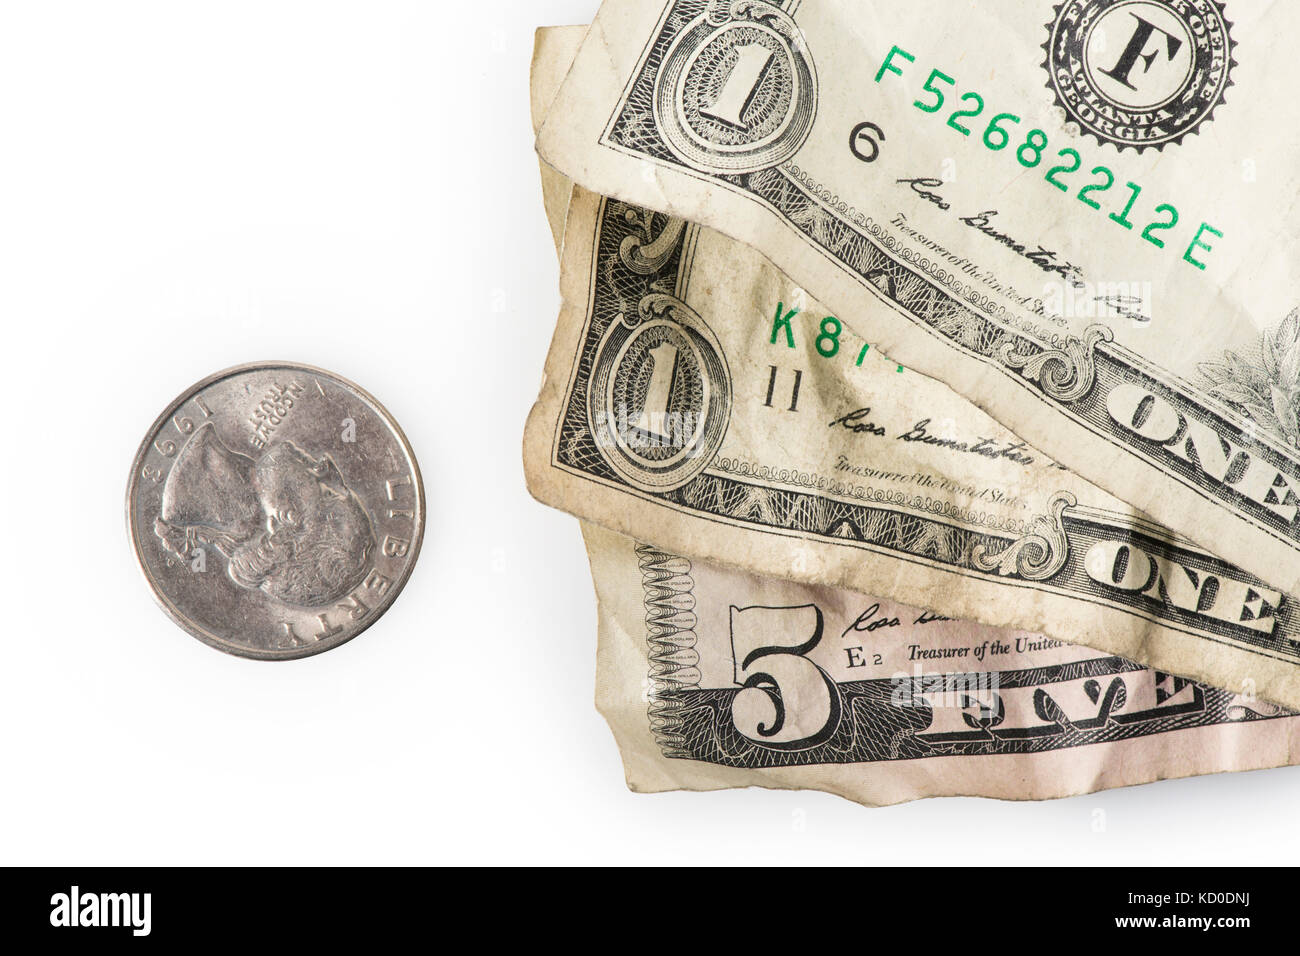 Faltige Dollarscheine und ein Viertel bis zu $7.25 hinzufügen, die aktuellen (Stand 2016) US Federal Mindestlohn. Stockfoto